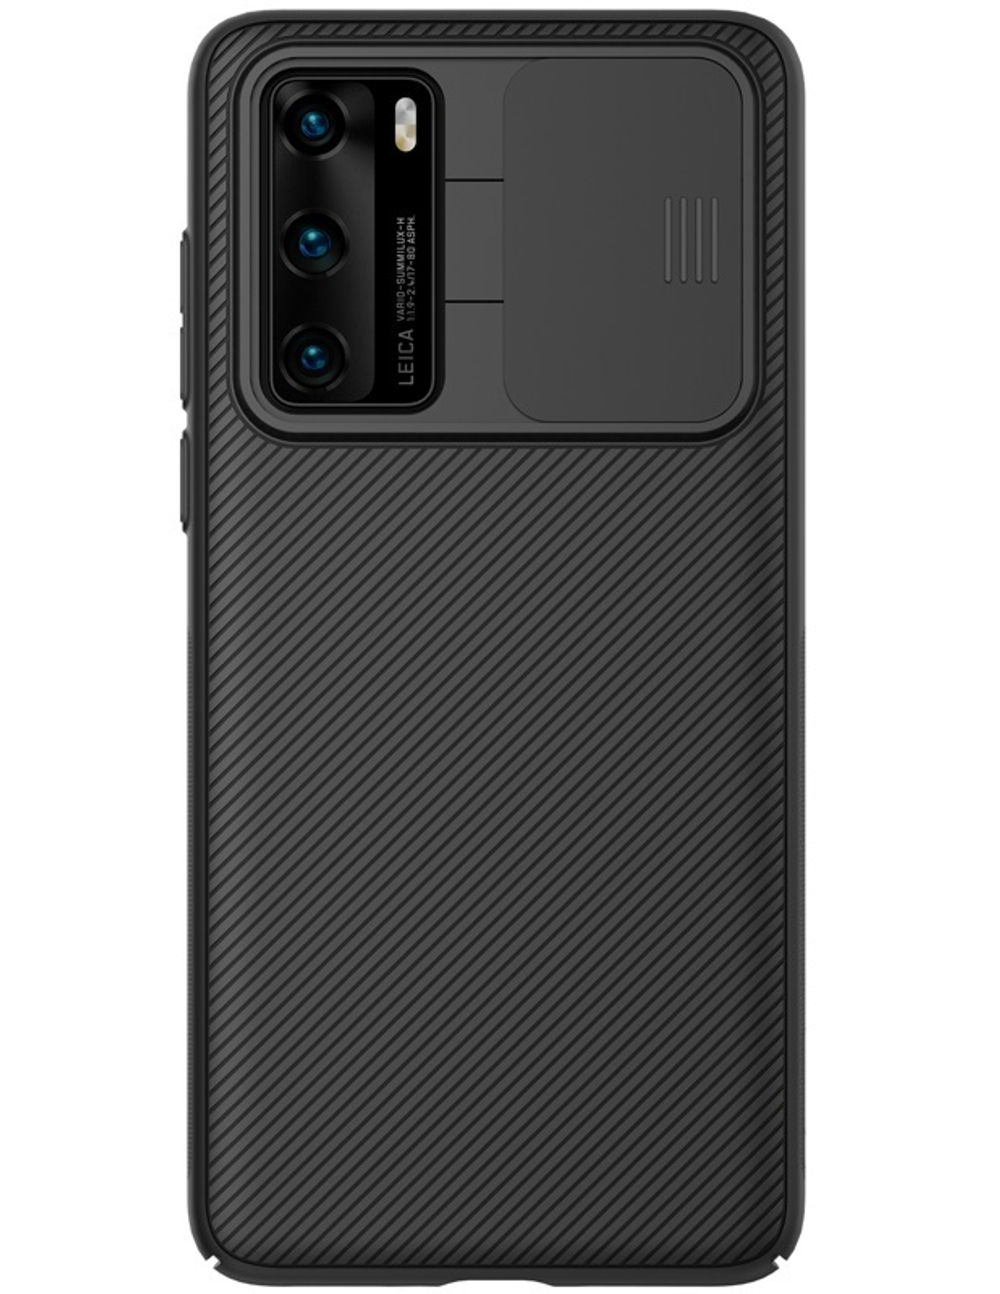 Чехол от Nillkin серии CamShield Case для Huawei P40 с защитной шторкой для задней камеры